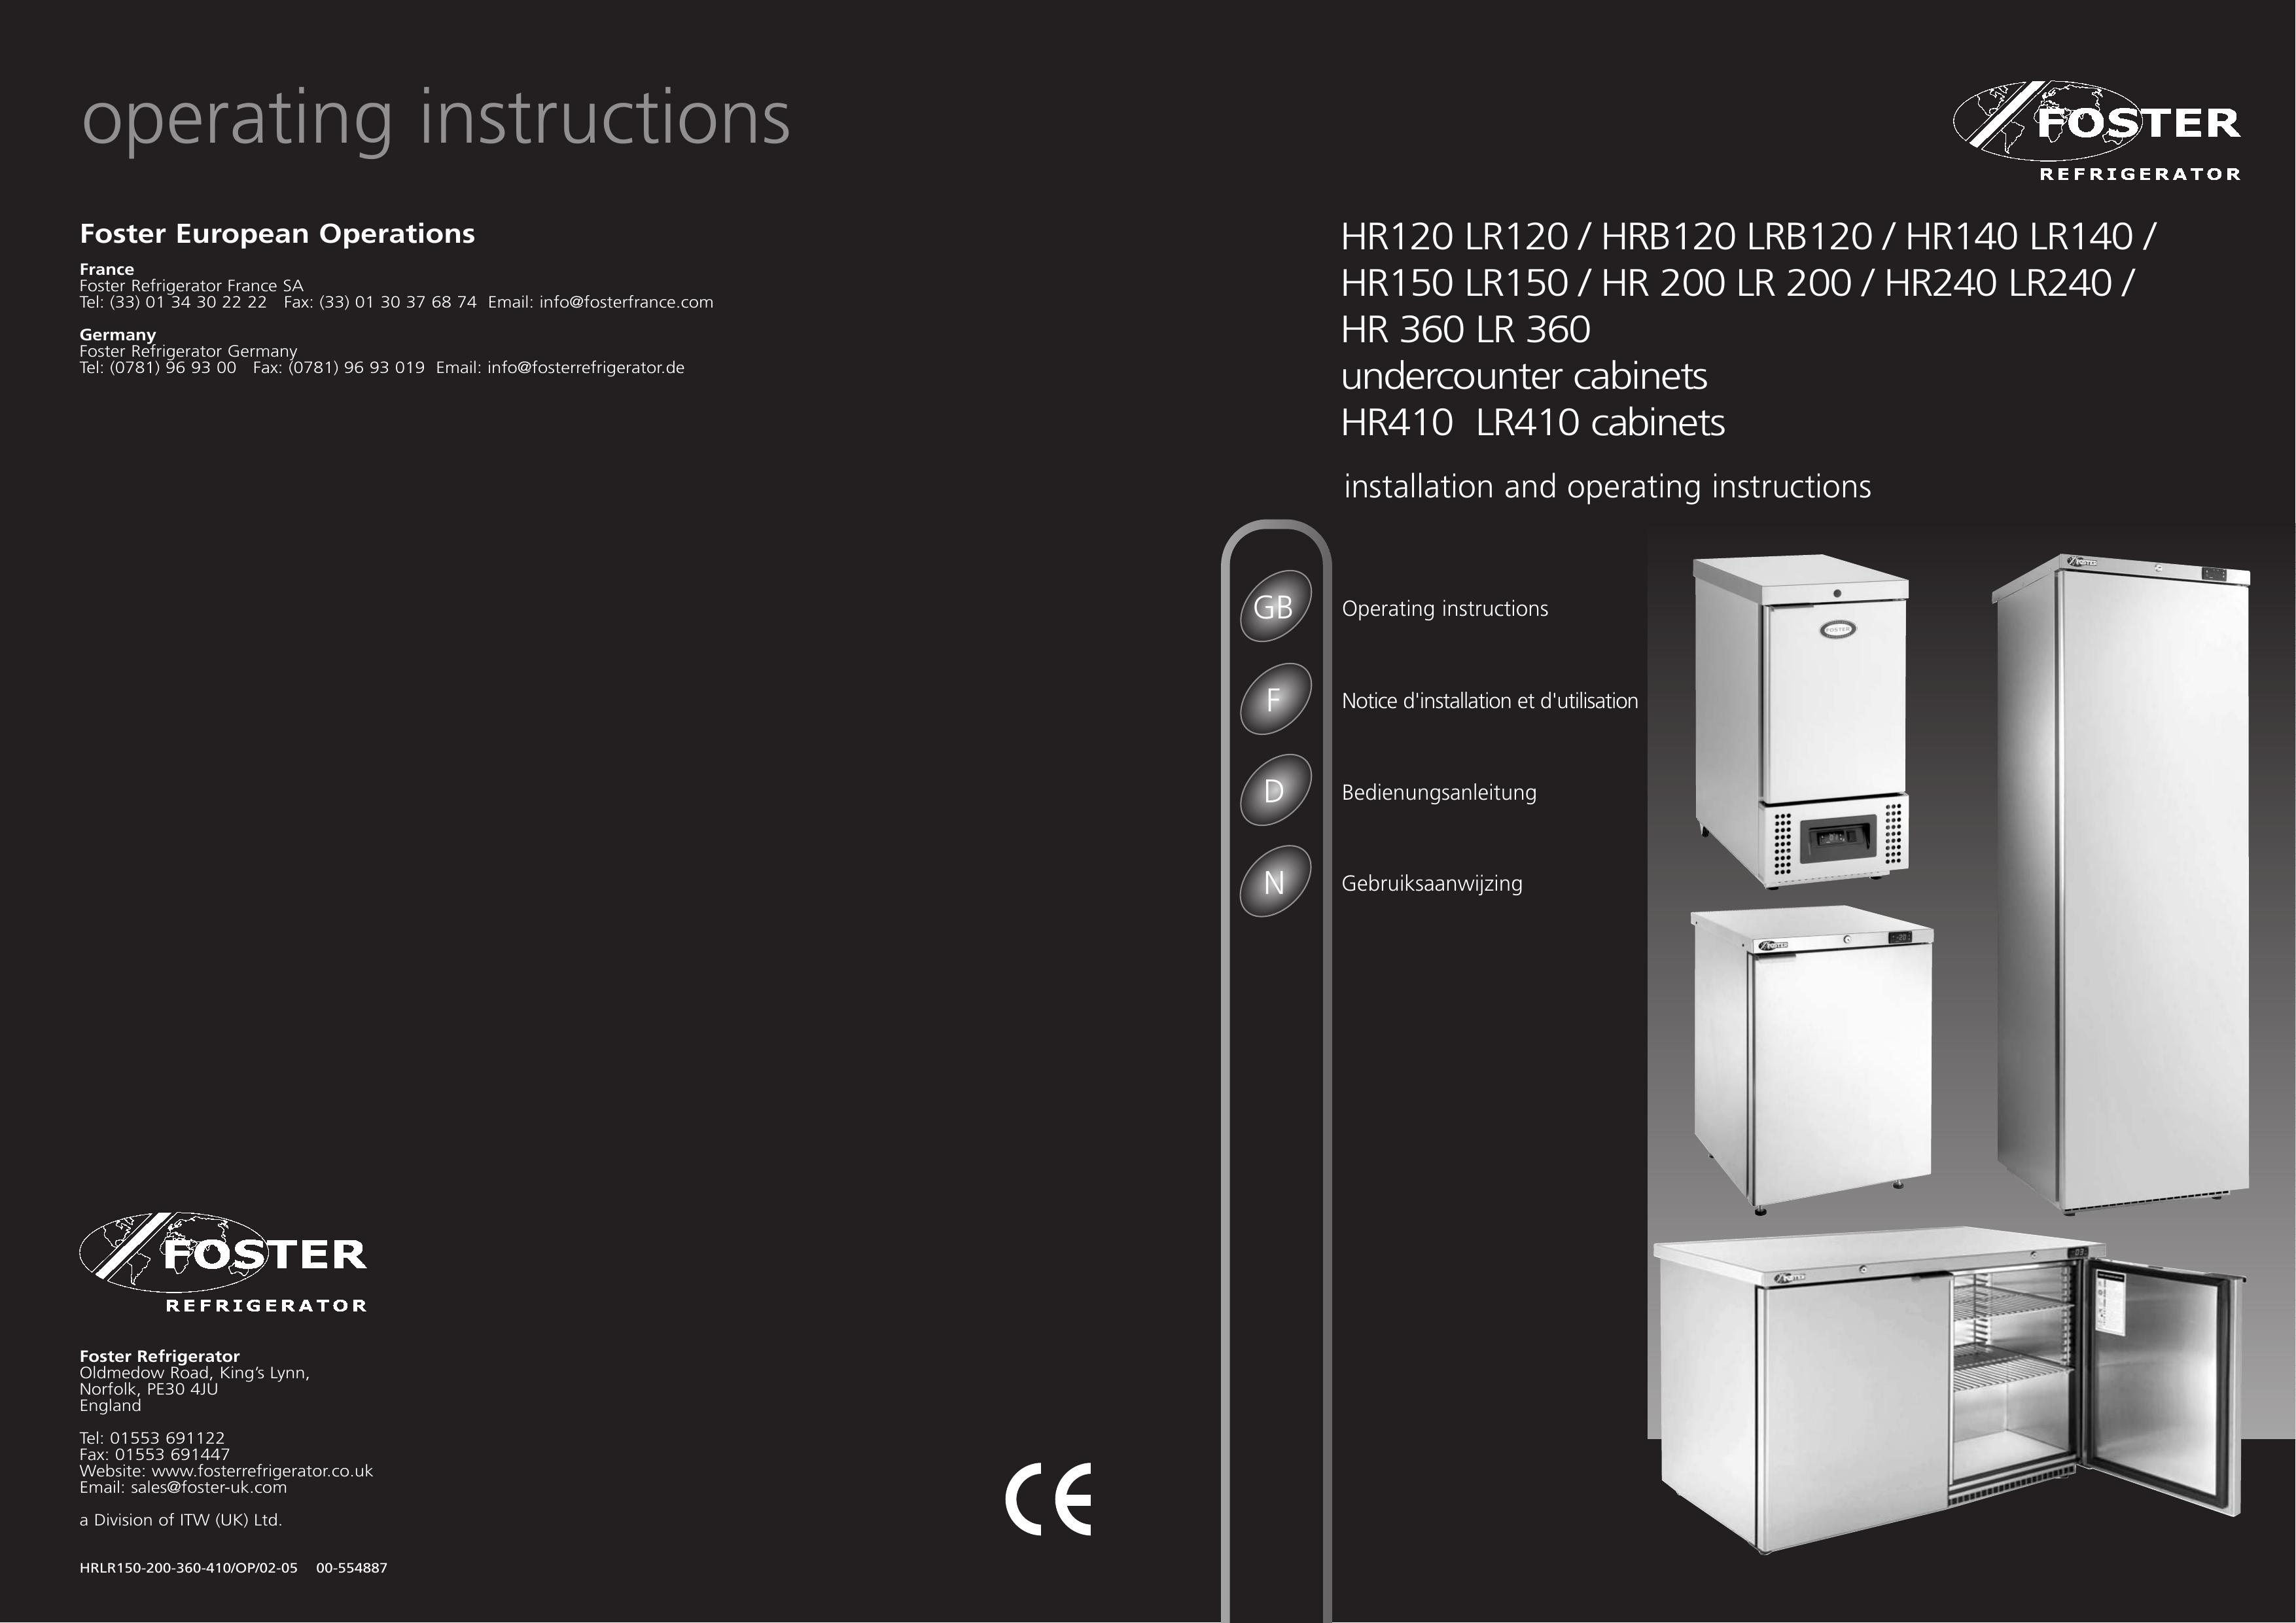 Foster HR240 LR240 Refrigerator User Manual